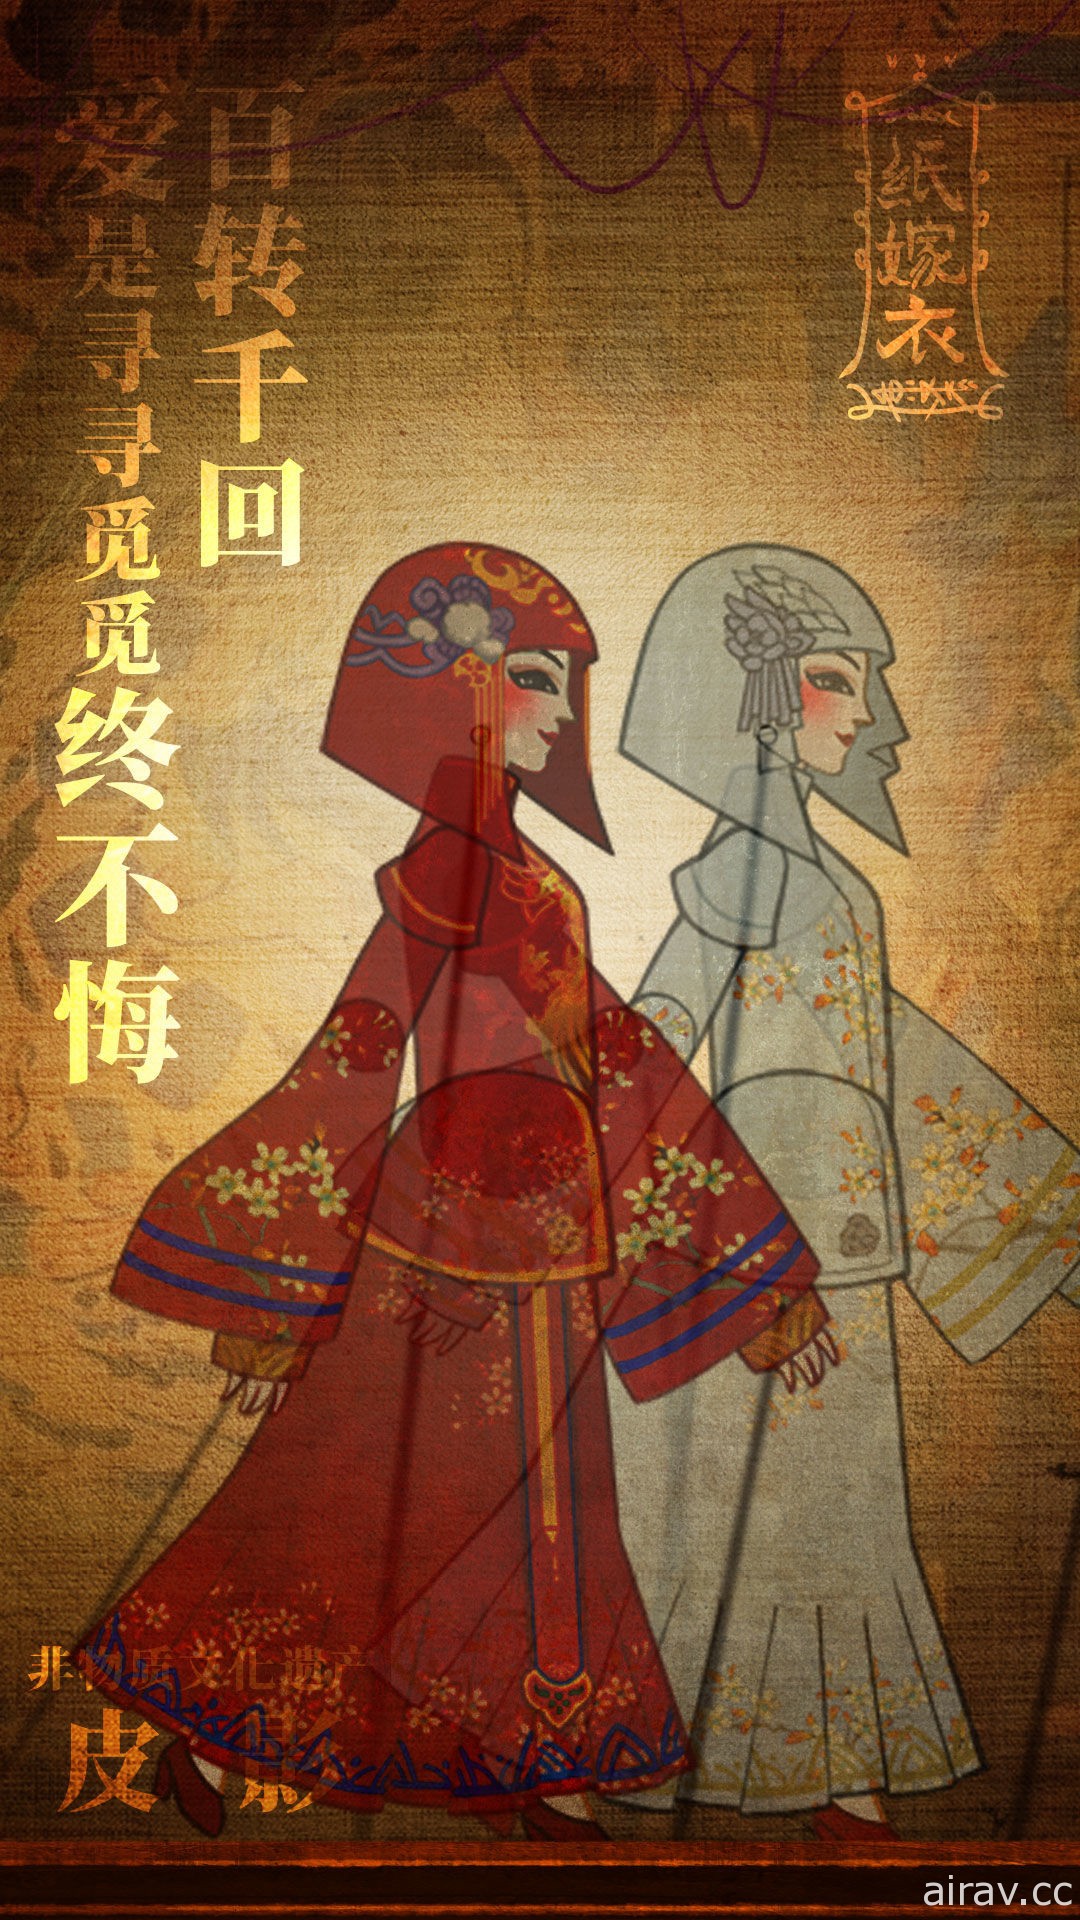 中式懸疑劇情解謎遊戲《紙嫁衣》系列最新作《紙嫁衣 3》宣布將於 2022 年推出